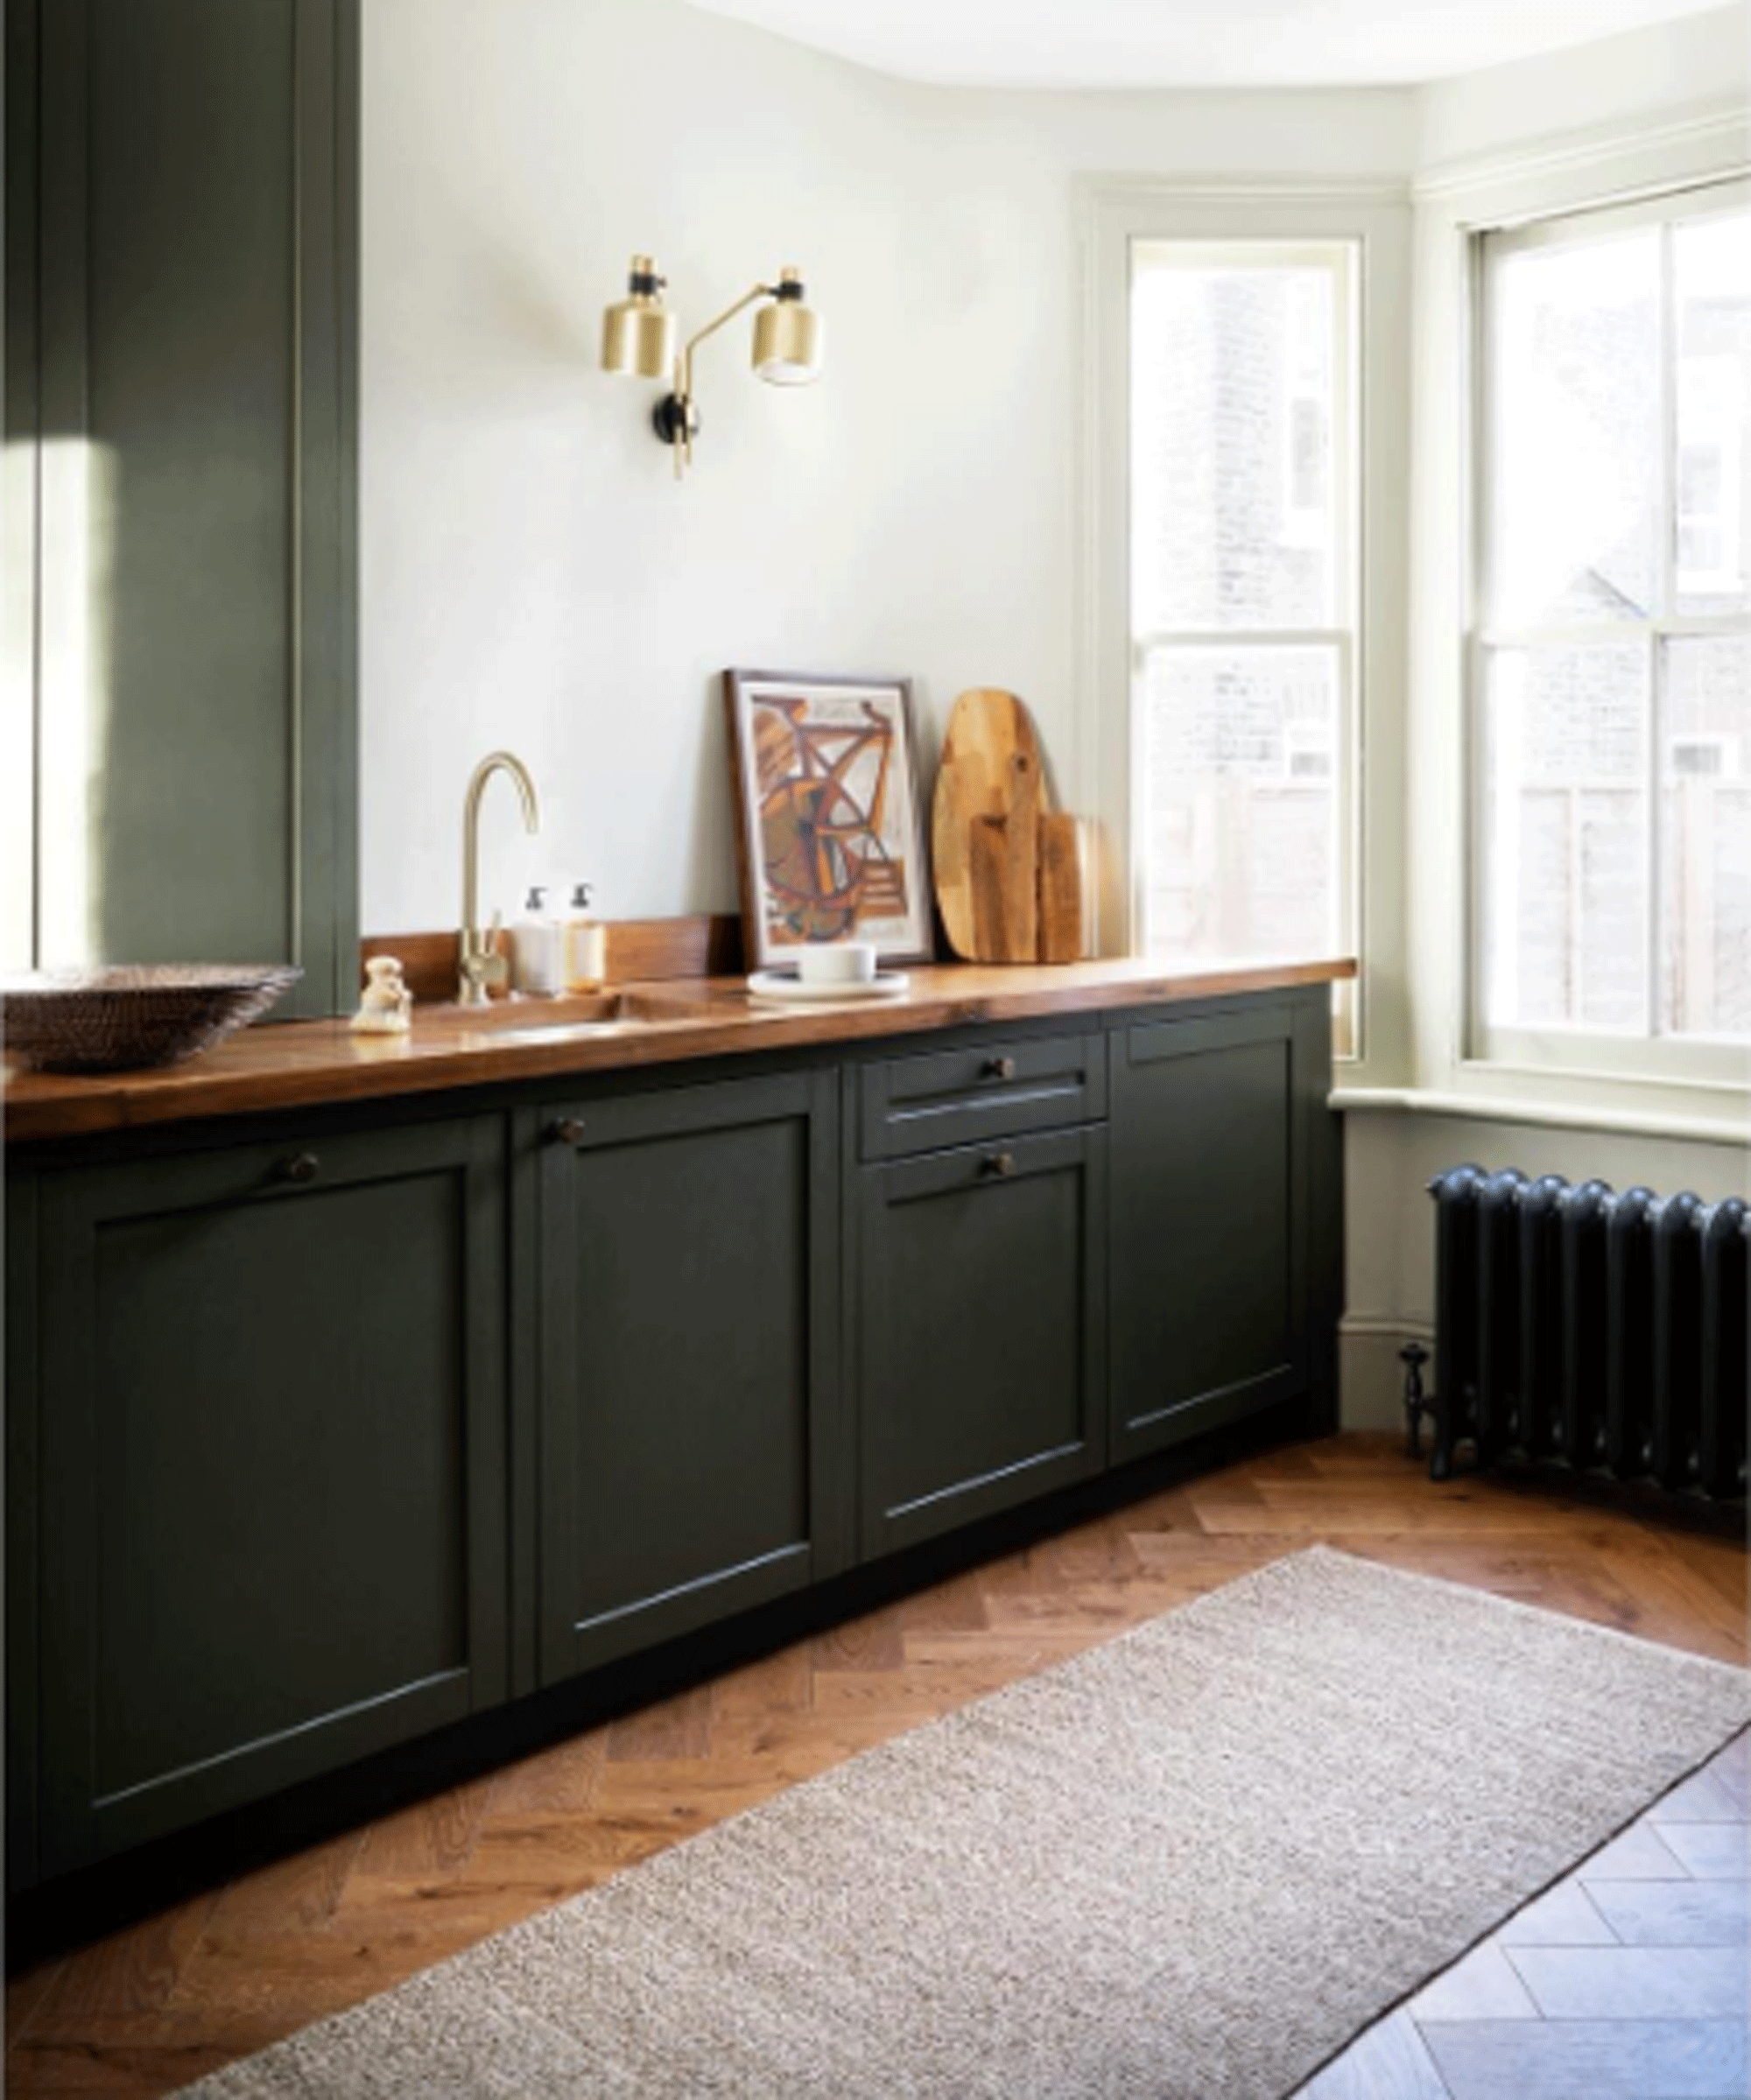 Dark kitchen with beige rug